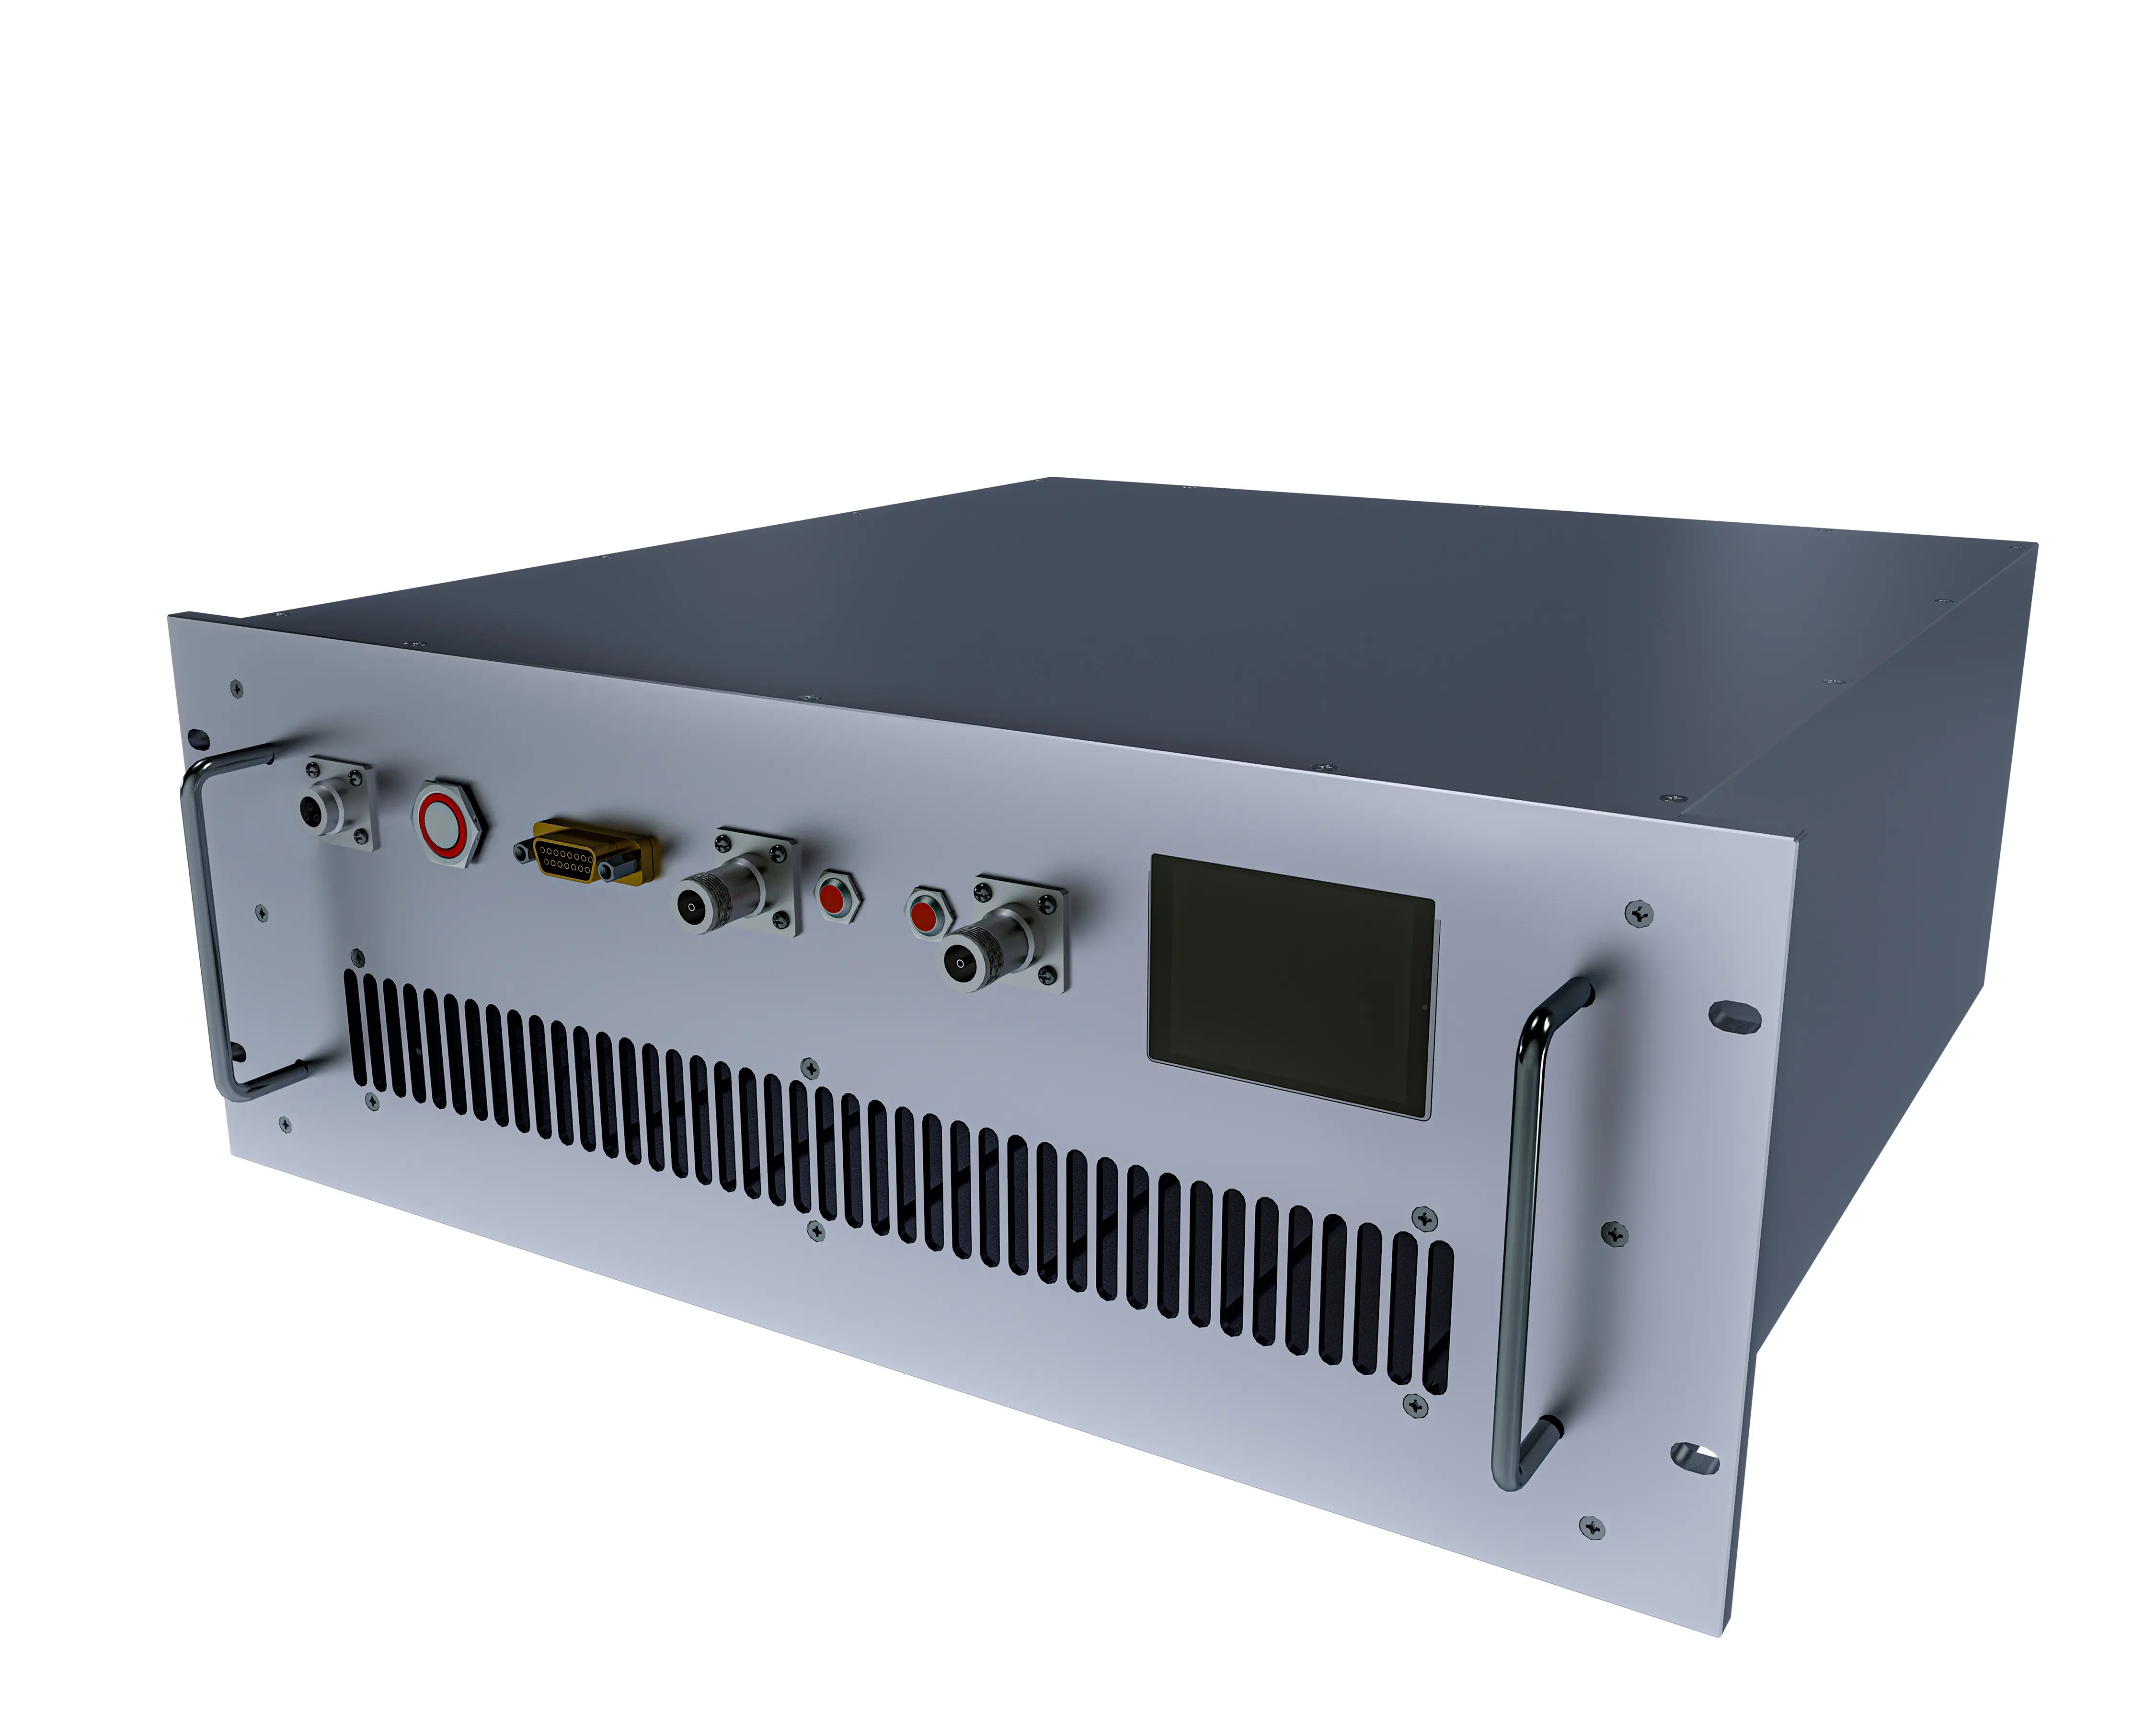 C banda 4200-4500 MHZ 200W alta potência RF amplificador para sistemas de comunicação